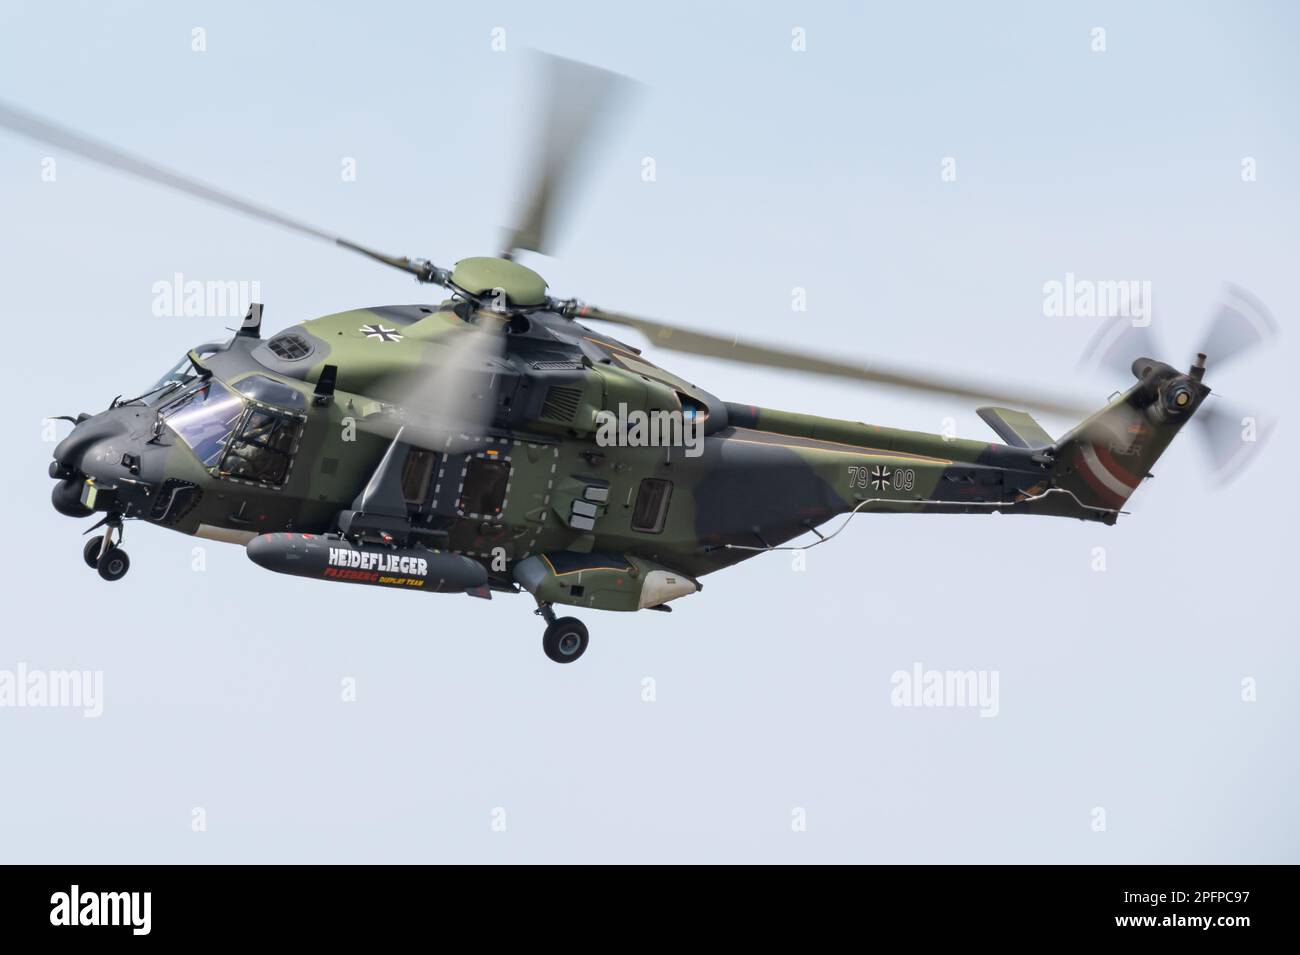 Ein NHIndustries-NH90-TTH-Hubschrauber der Deutschen Armee, der eine Ausstellung vorführt. Stockfoto